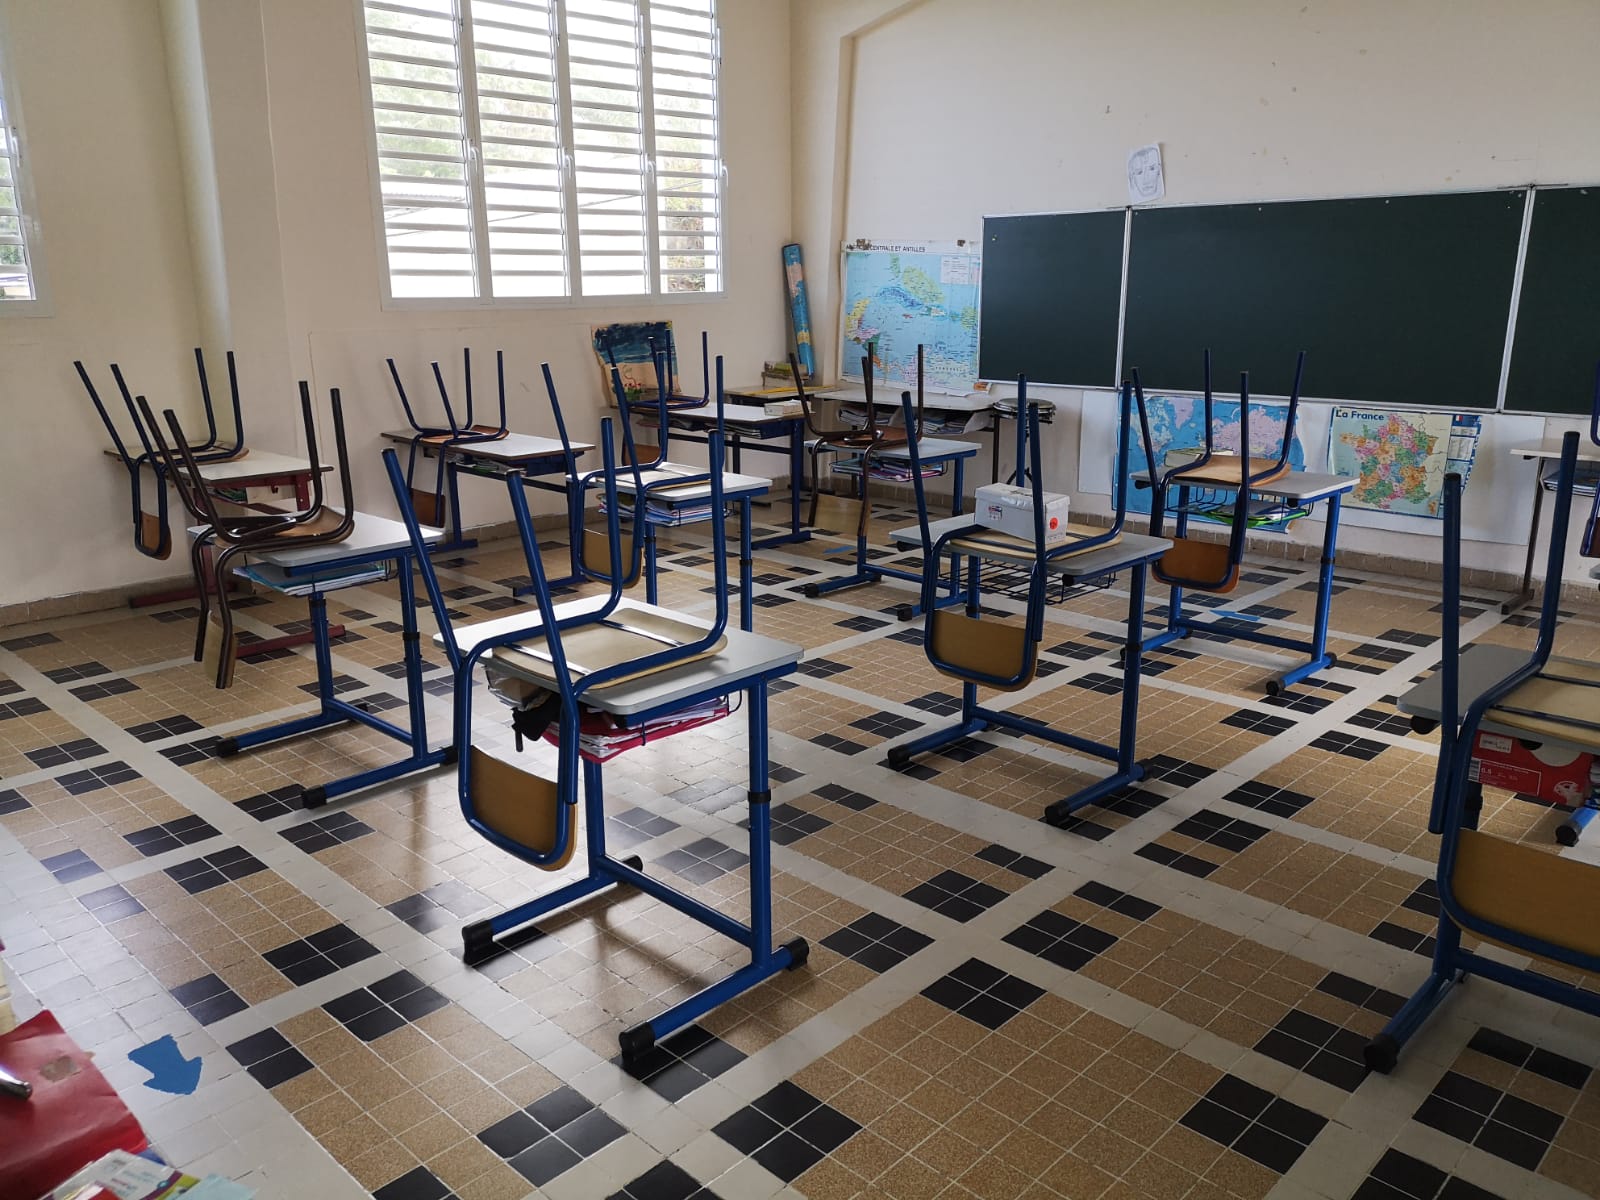     64 198 élèves font leur rentrée en Martinique 

